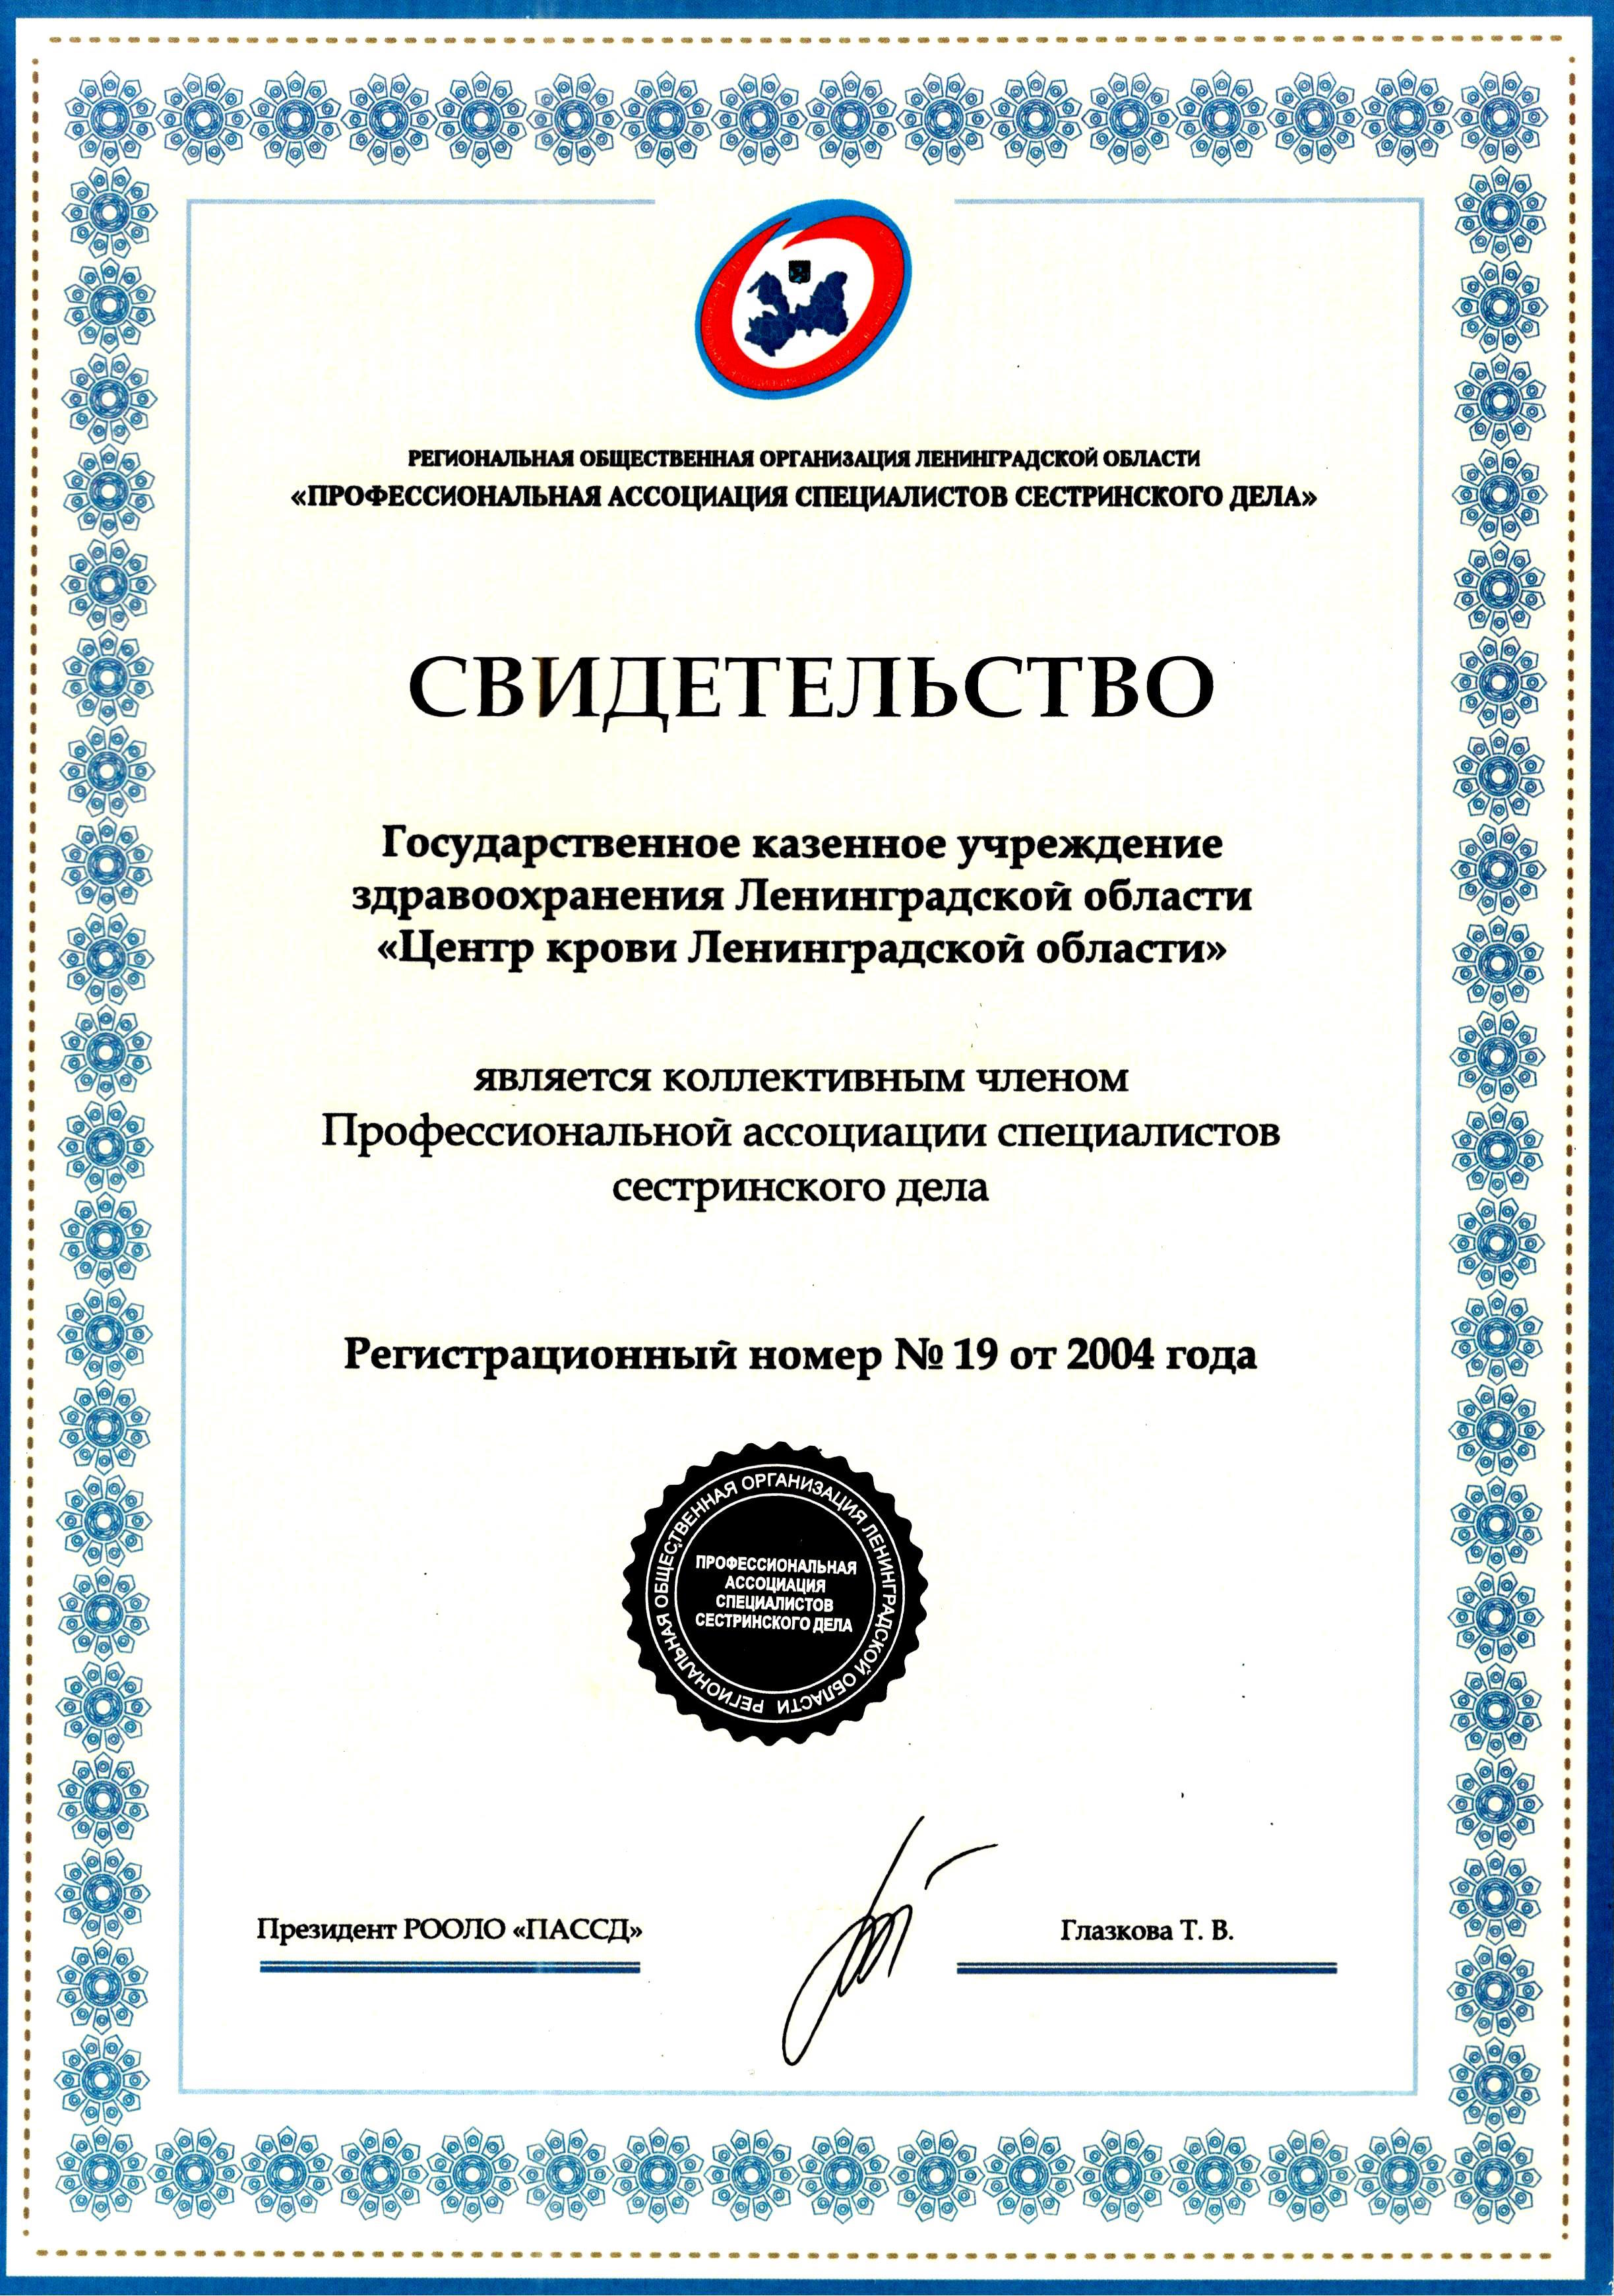 ГКУЗ "ЦКЛО": сертификат